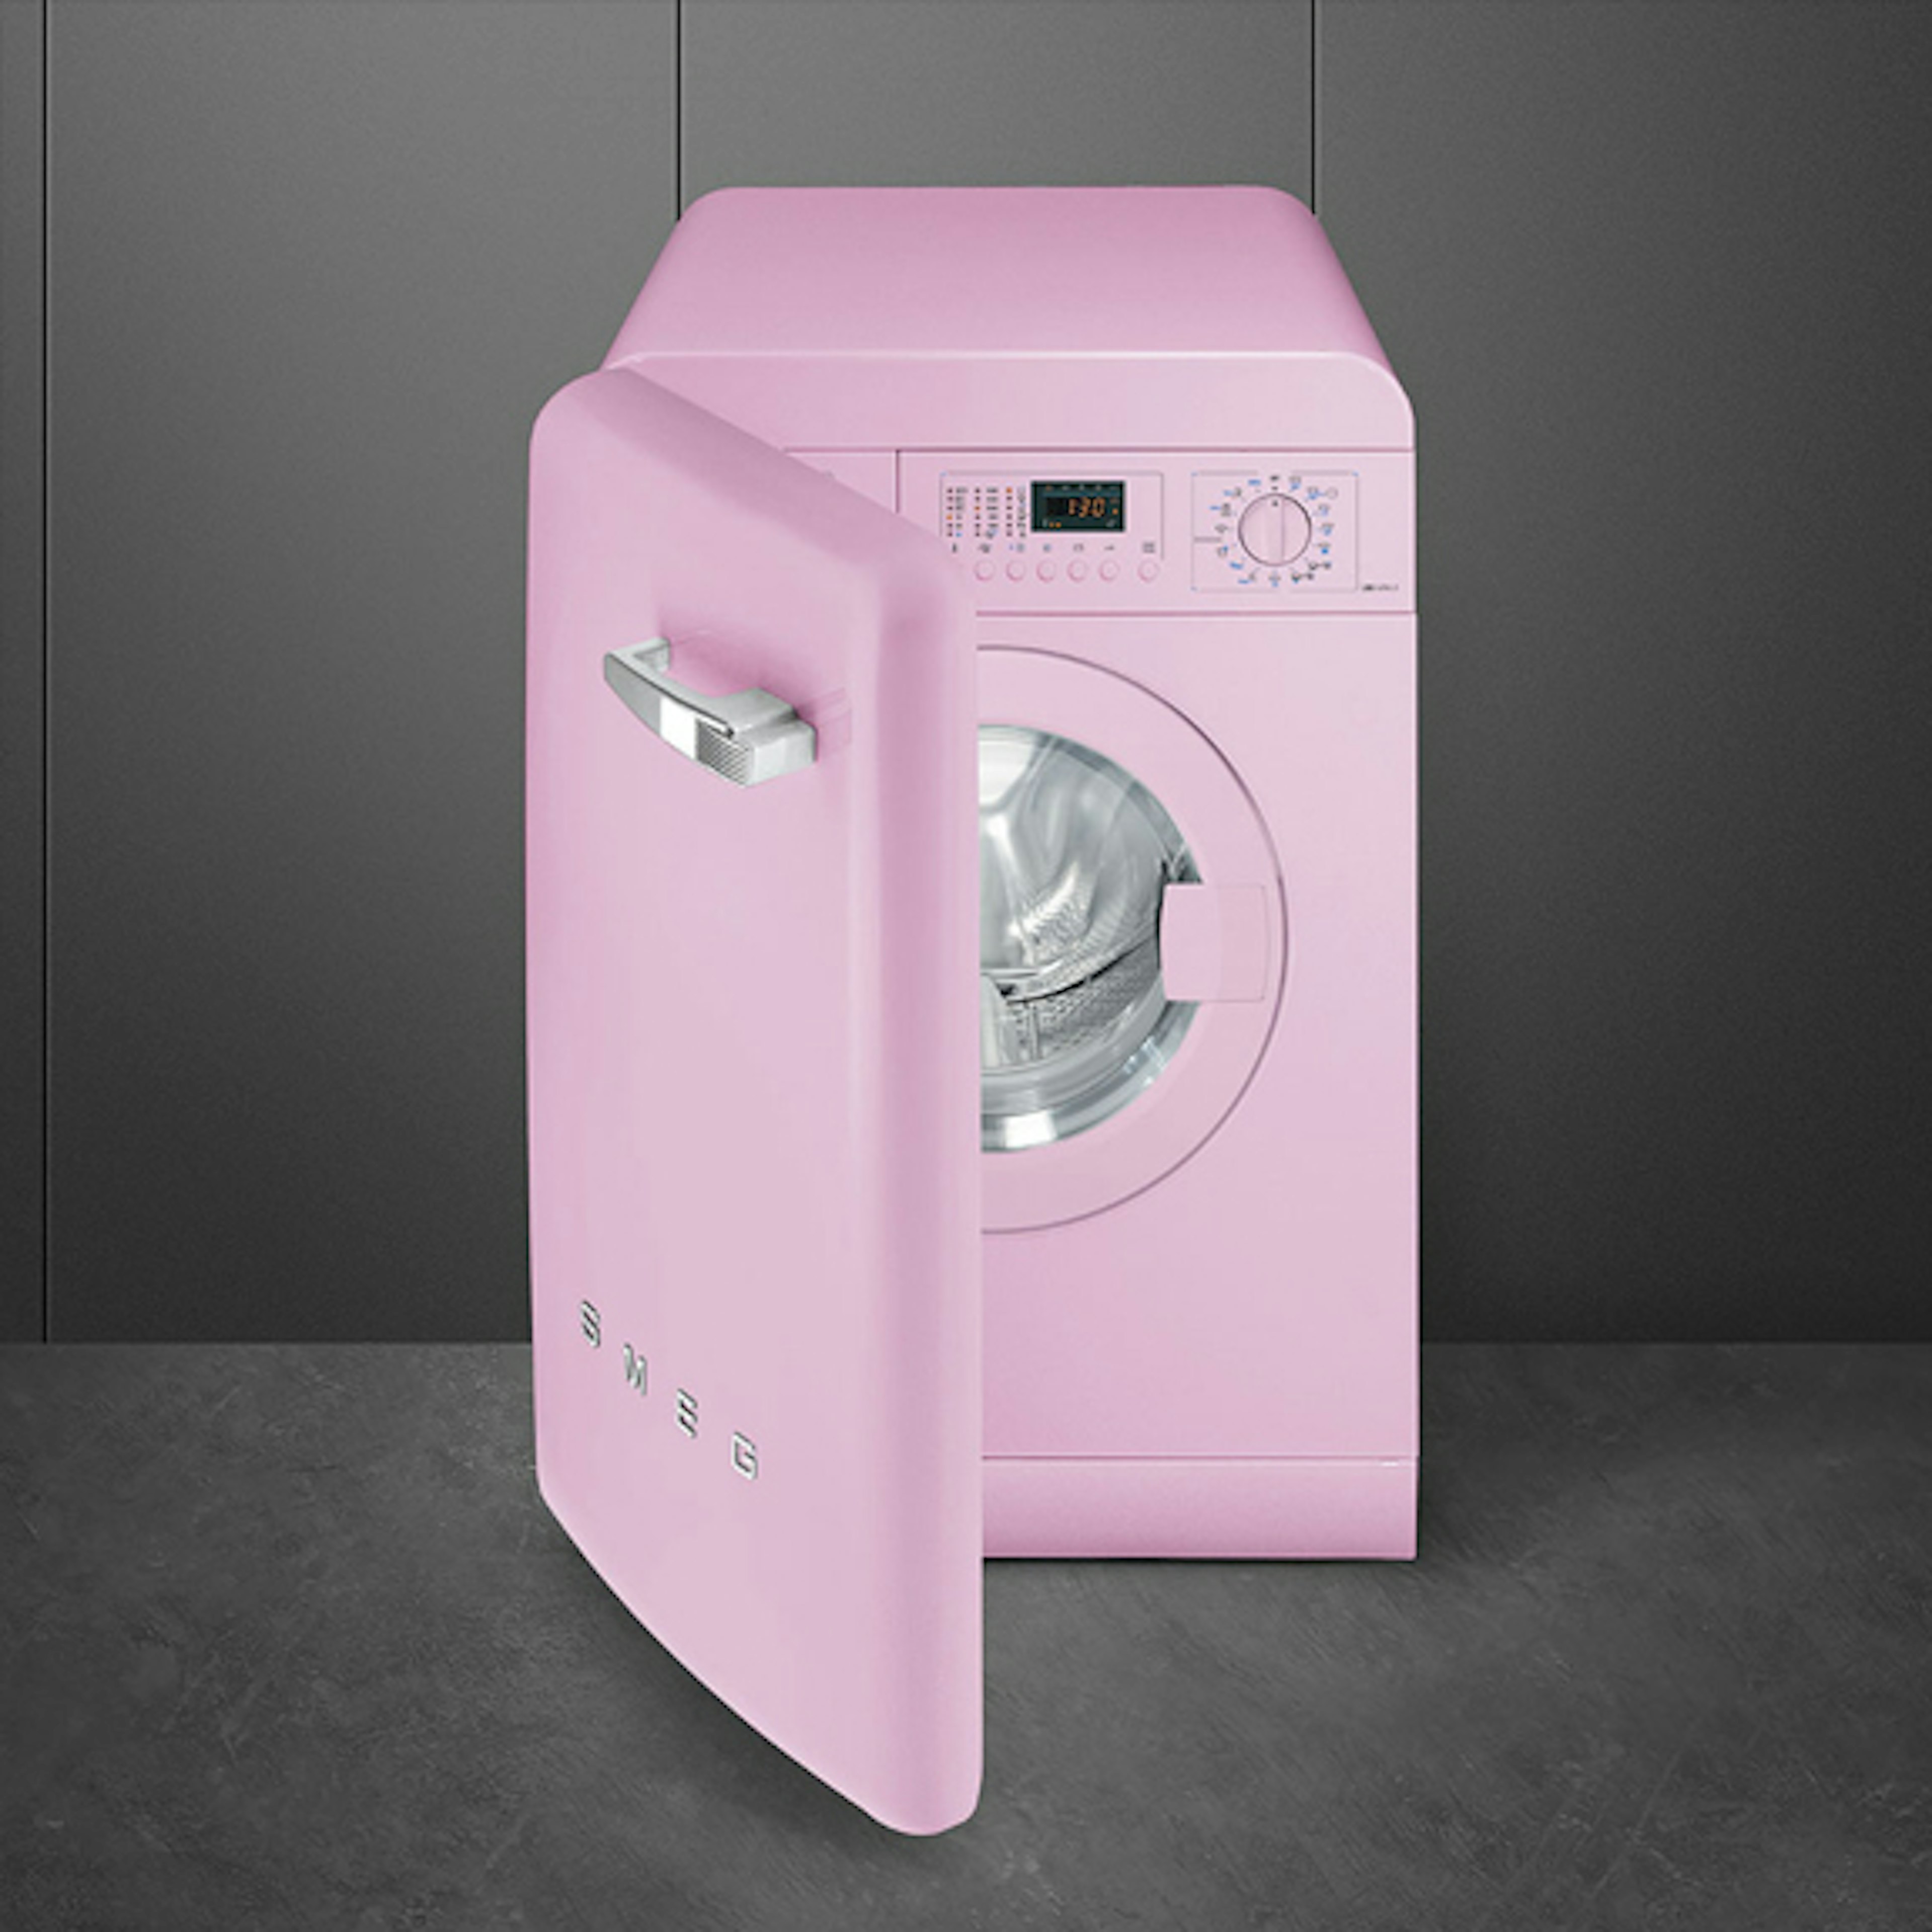 Roze wasmachine in jaren 50-stijl